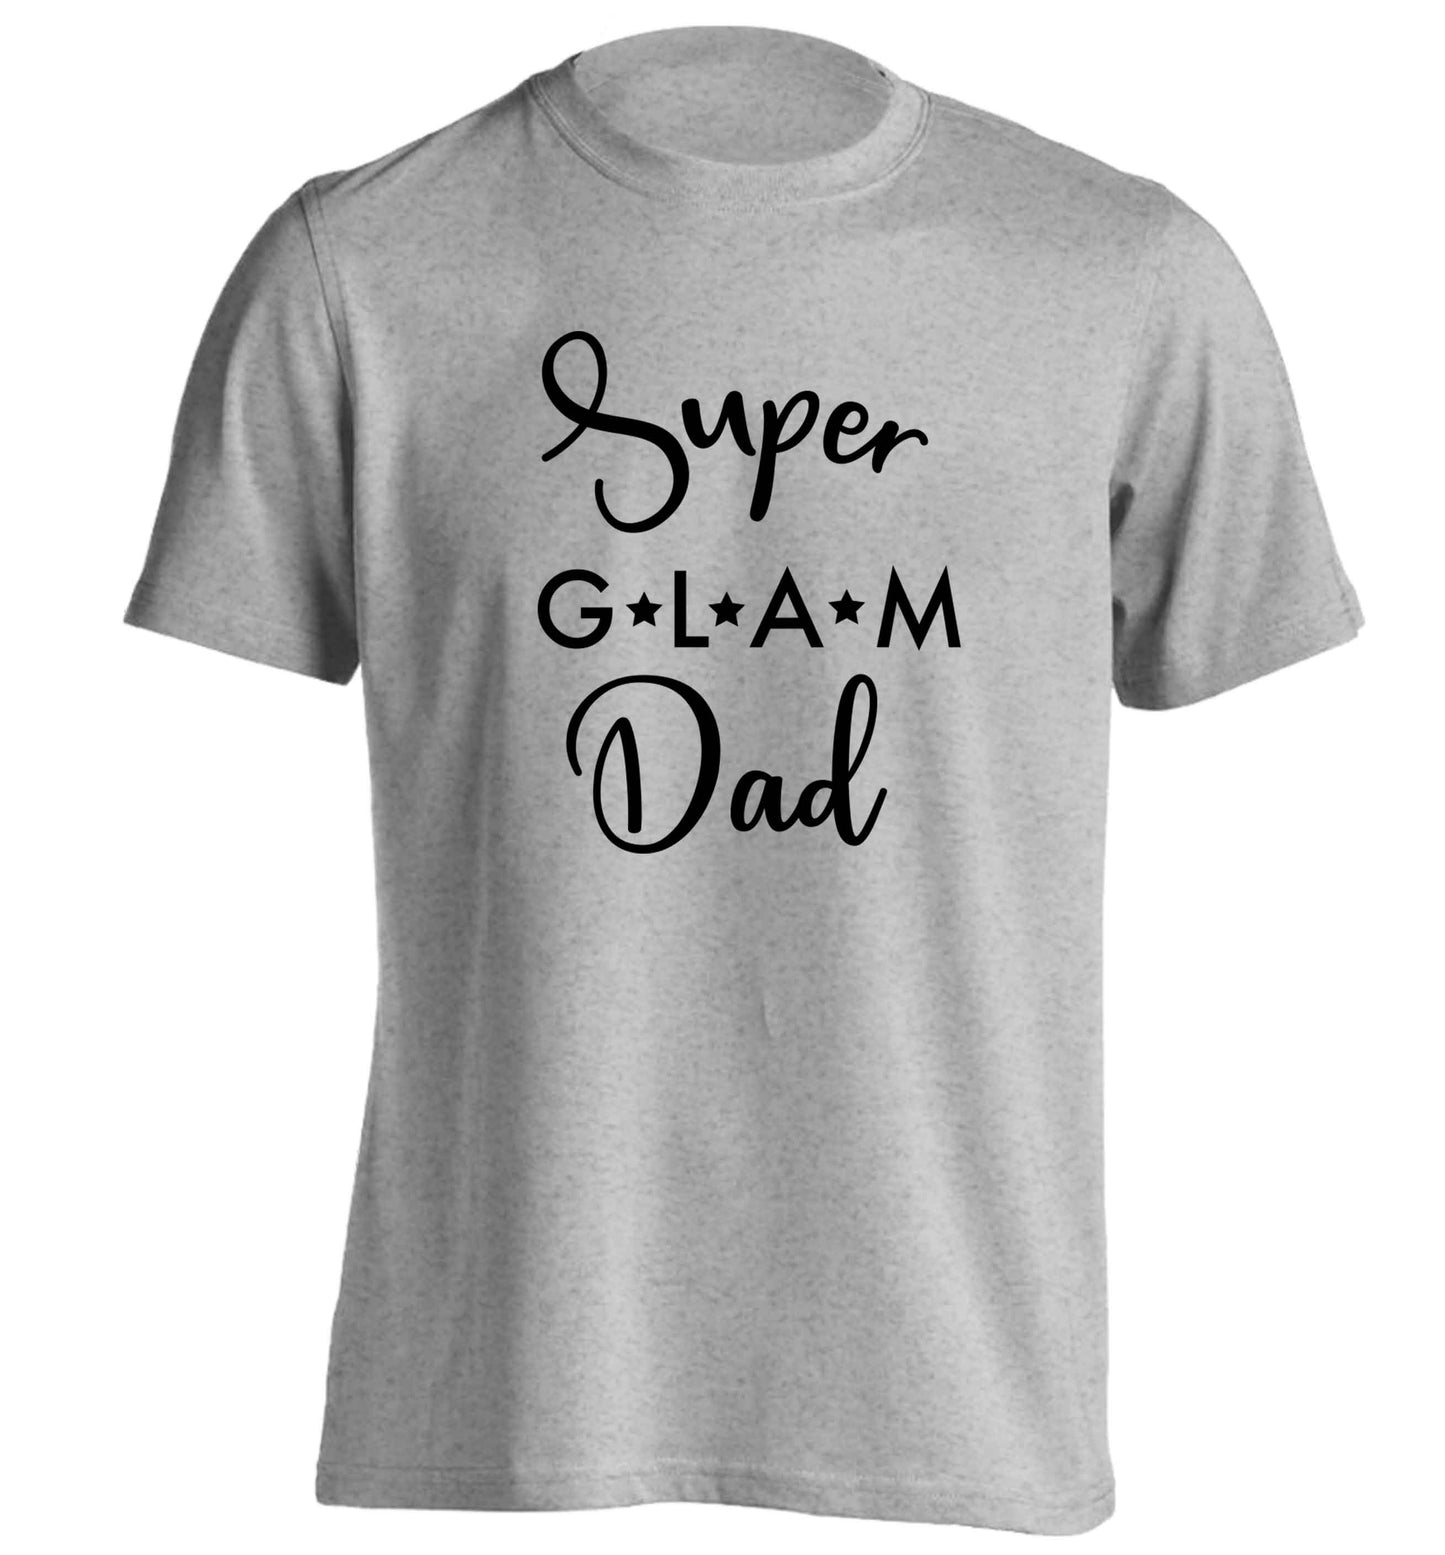 Super glam Dad adults unisex grey Tshirt 2XL